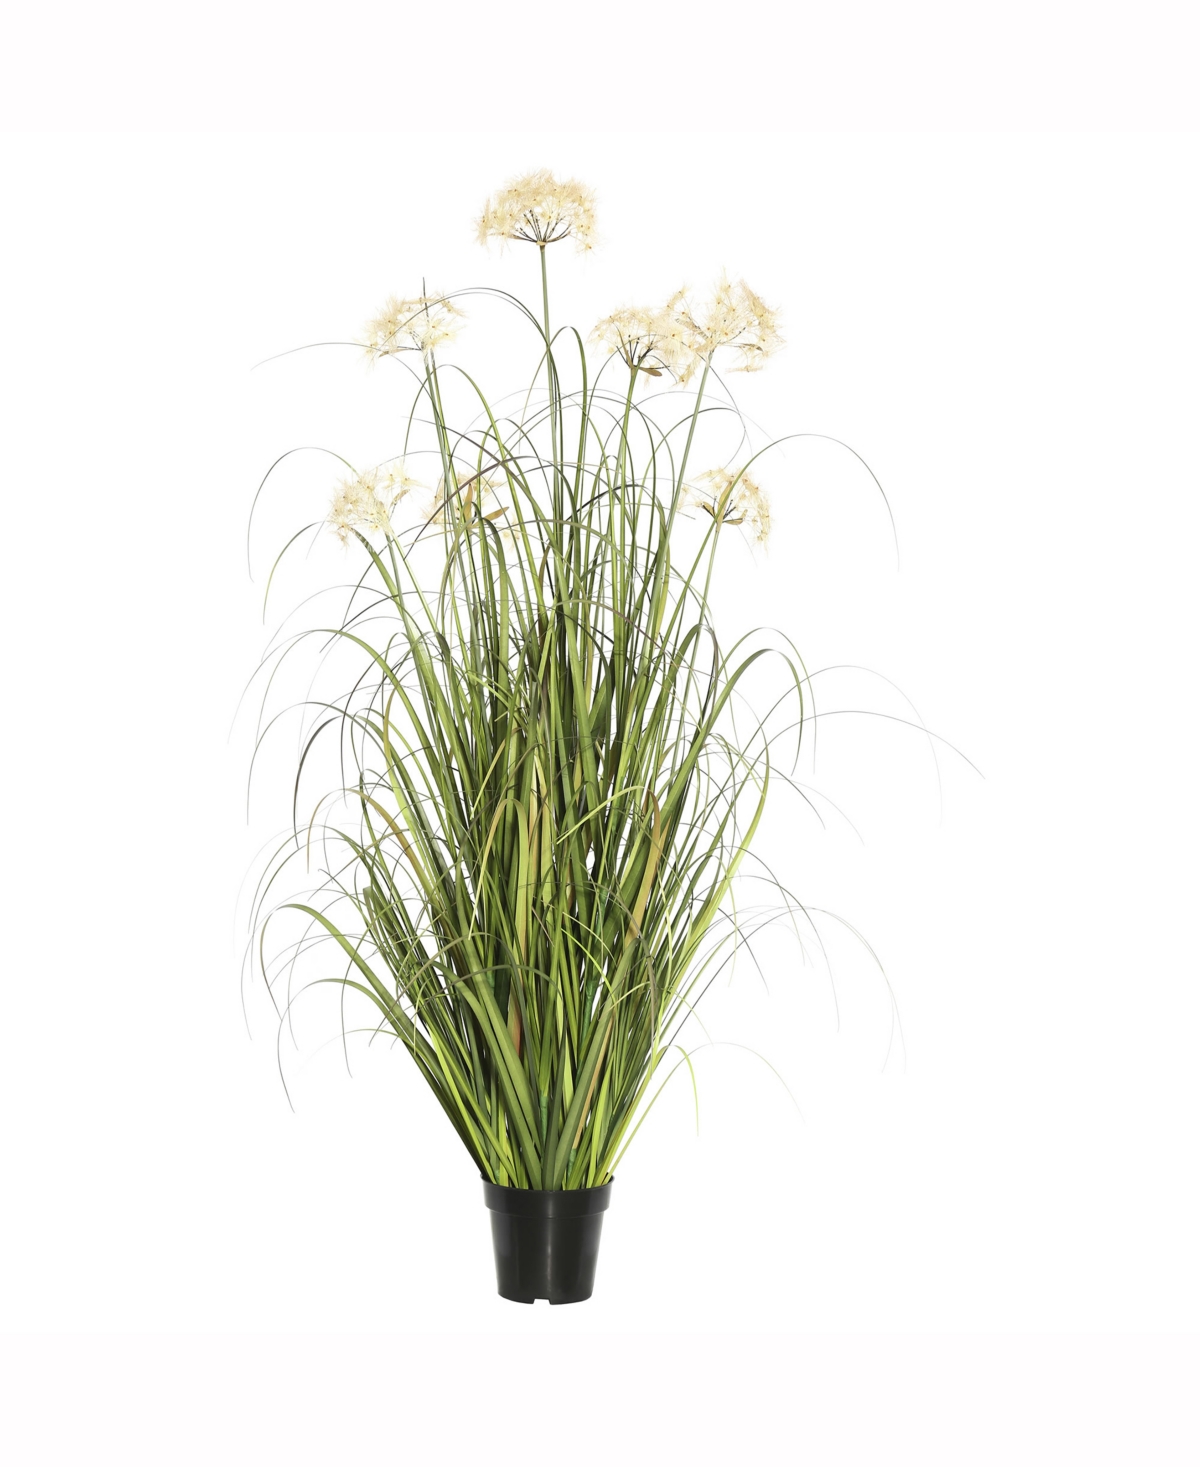 48" Artificial Green Grass X 163 Features 5 Cream Dandelions